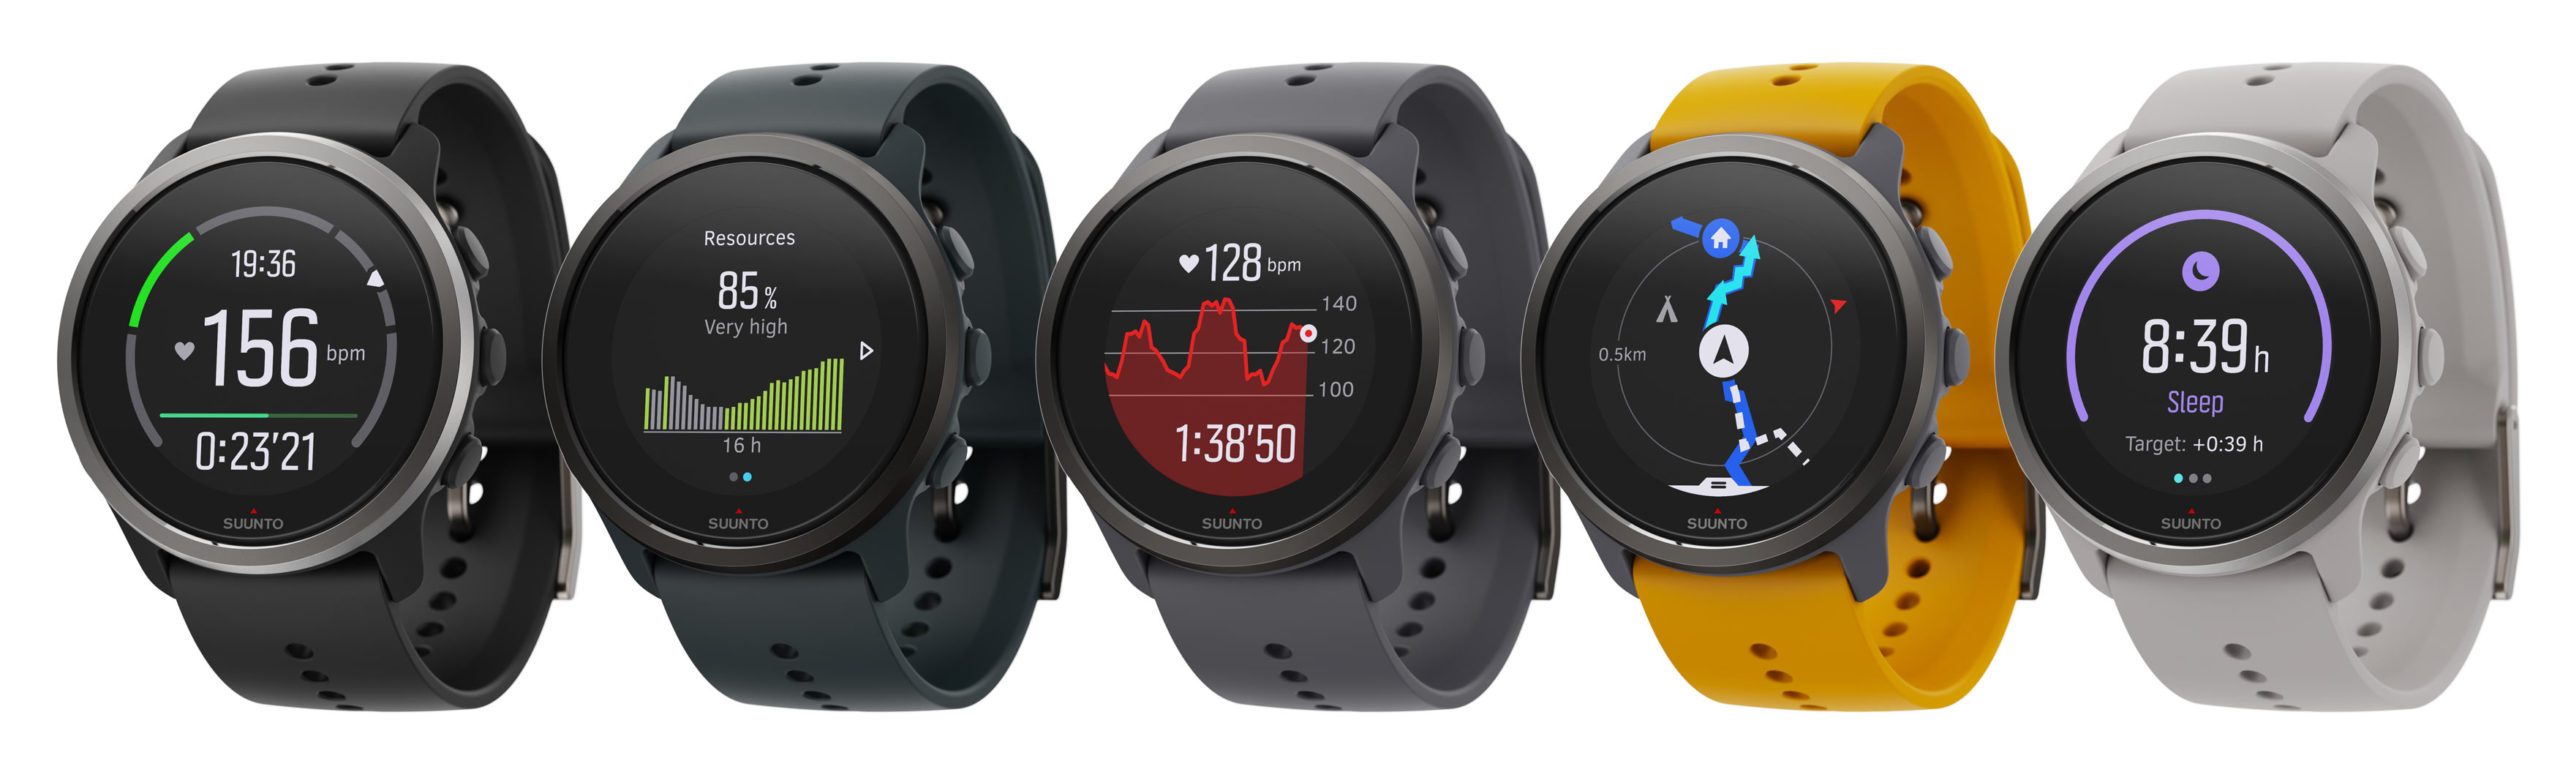 New 39g Suunto 5 Peak GPS watch packs 100 hours of tracking - Bikerumor